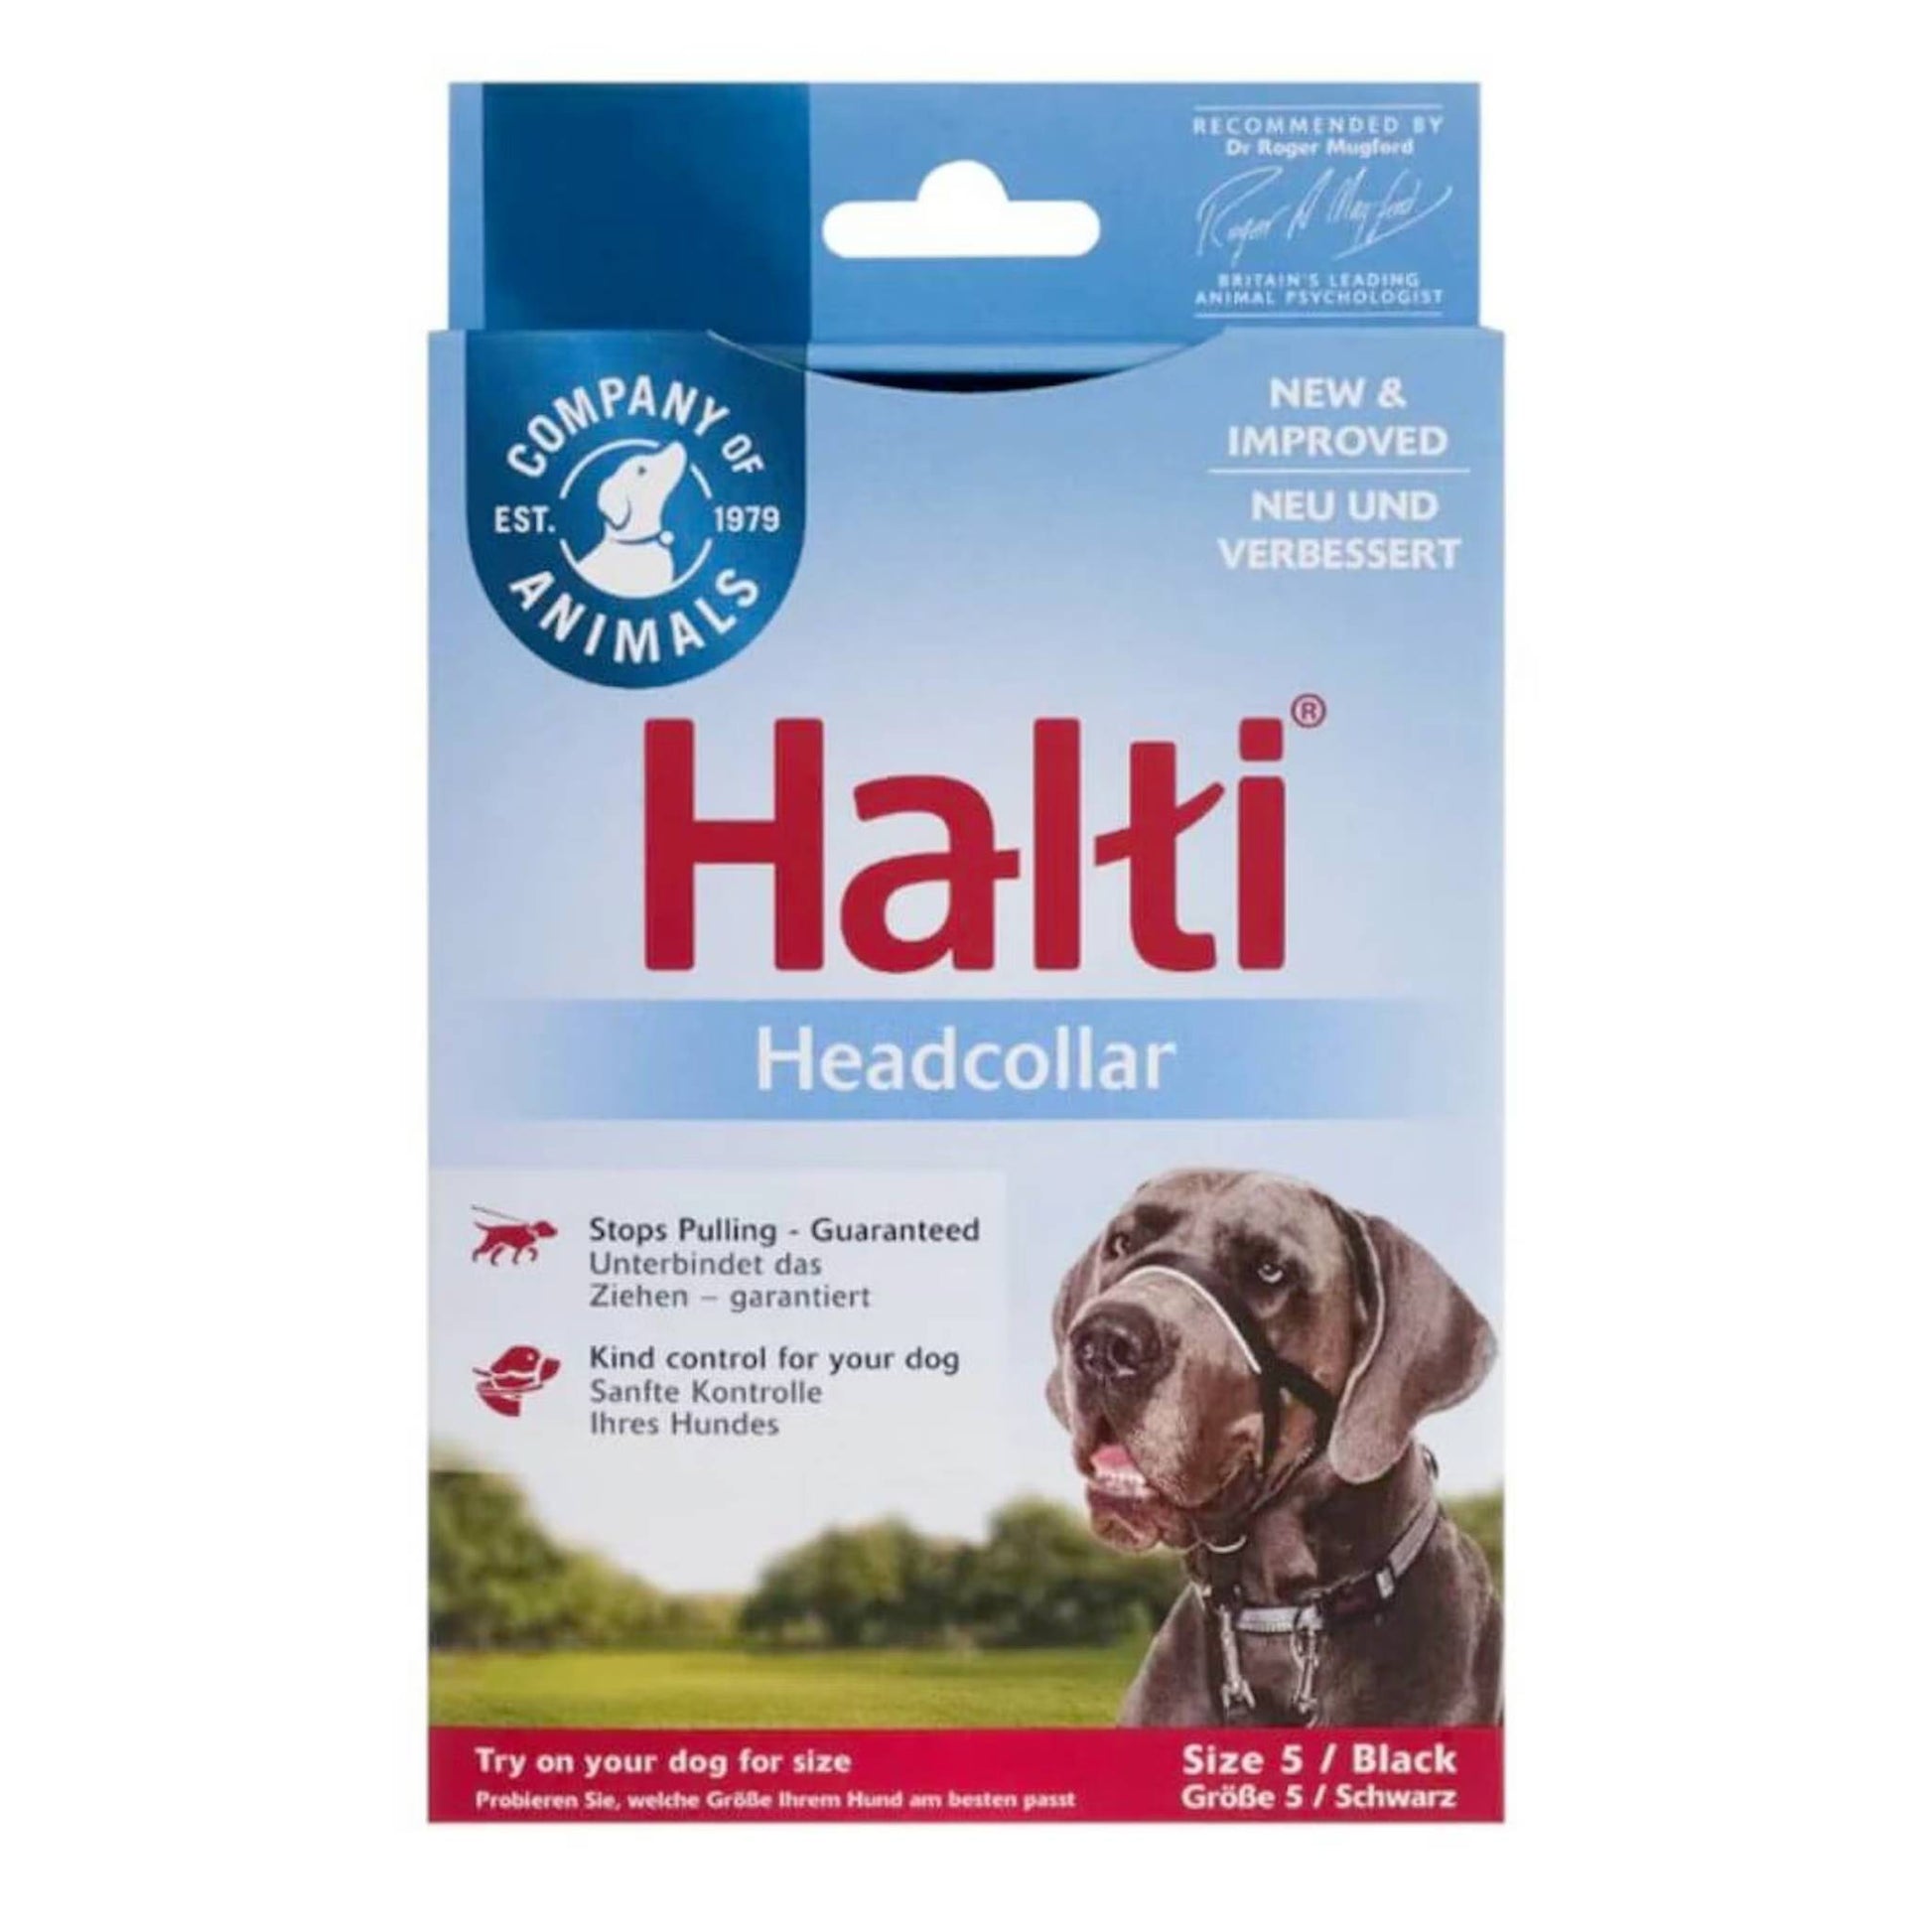 Halti headcollar for dogs size 5